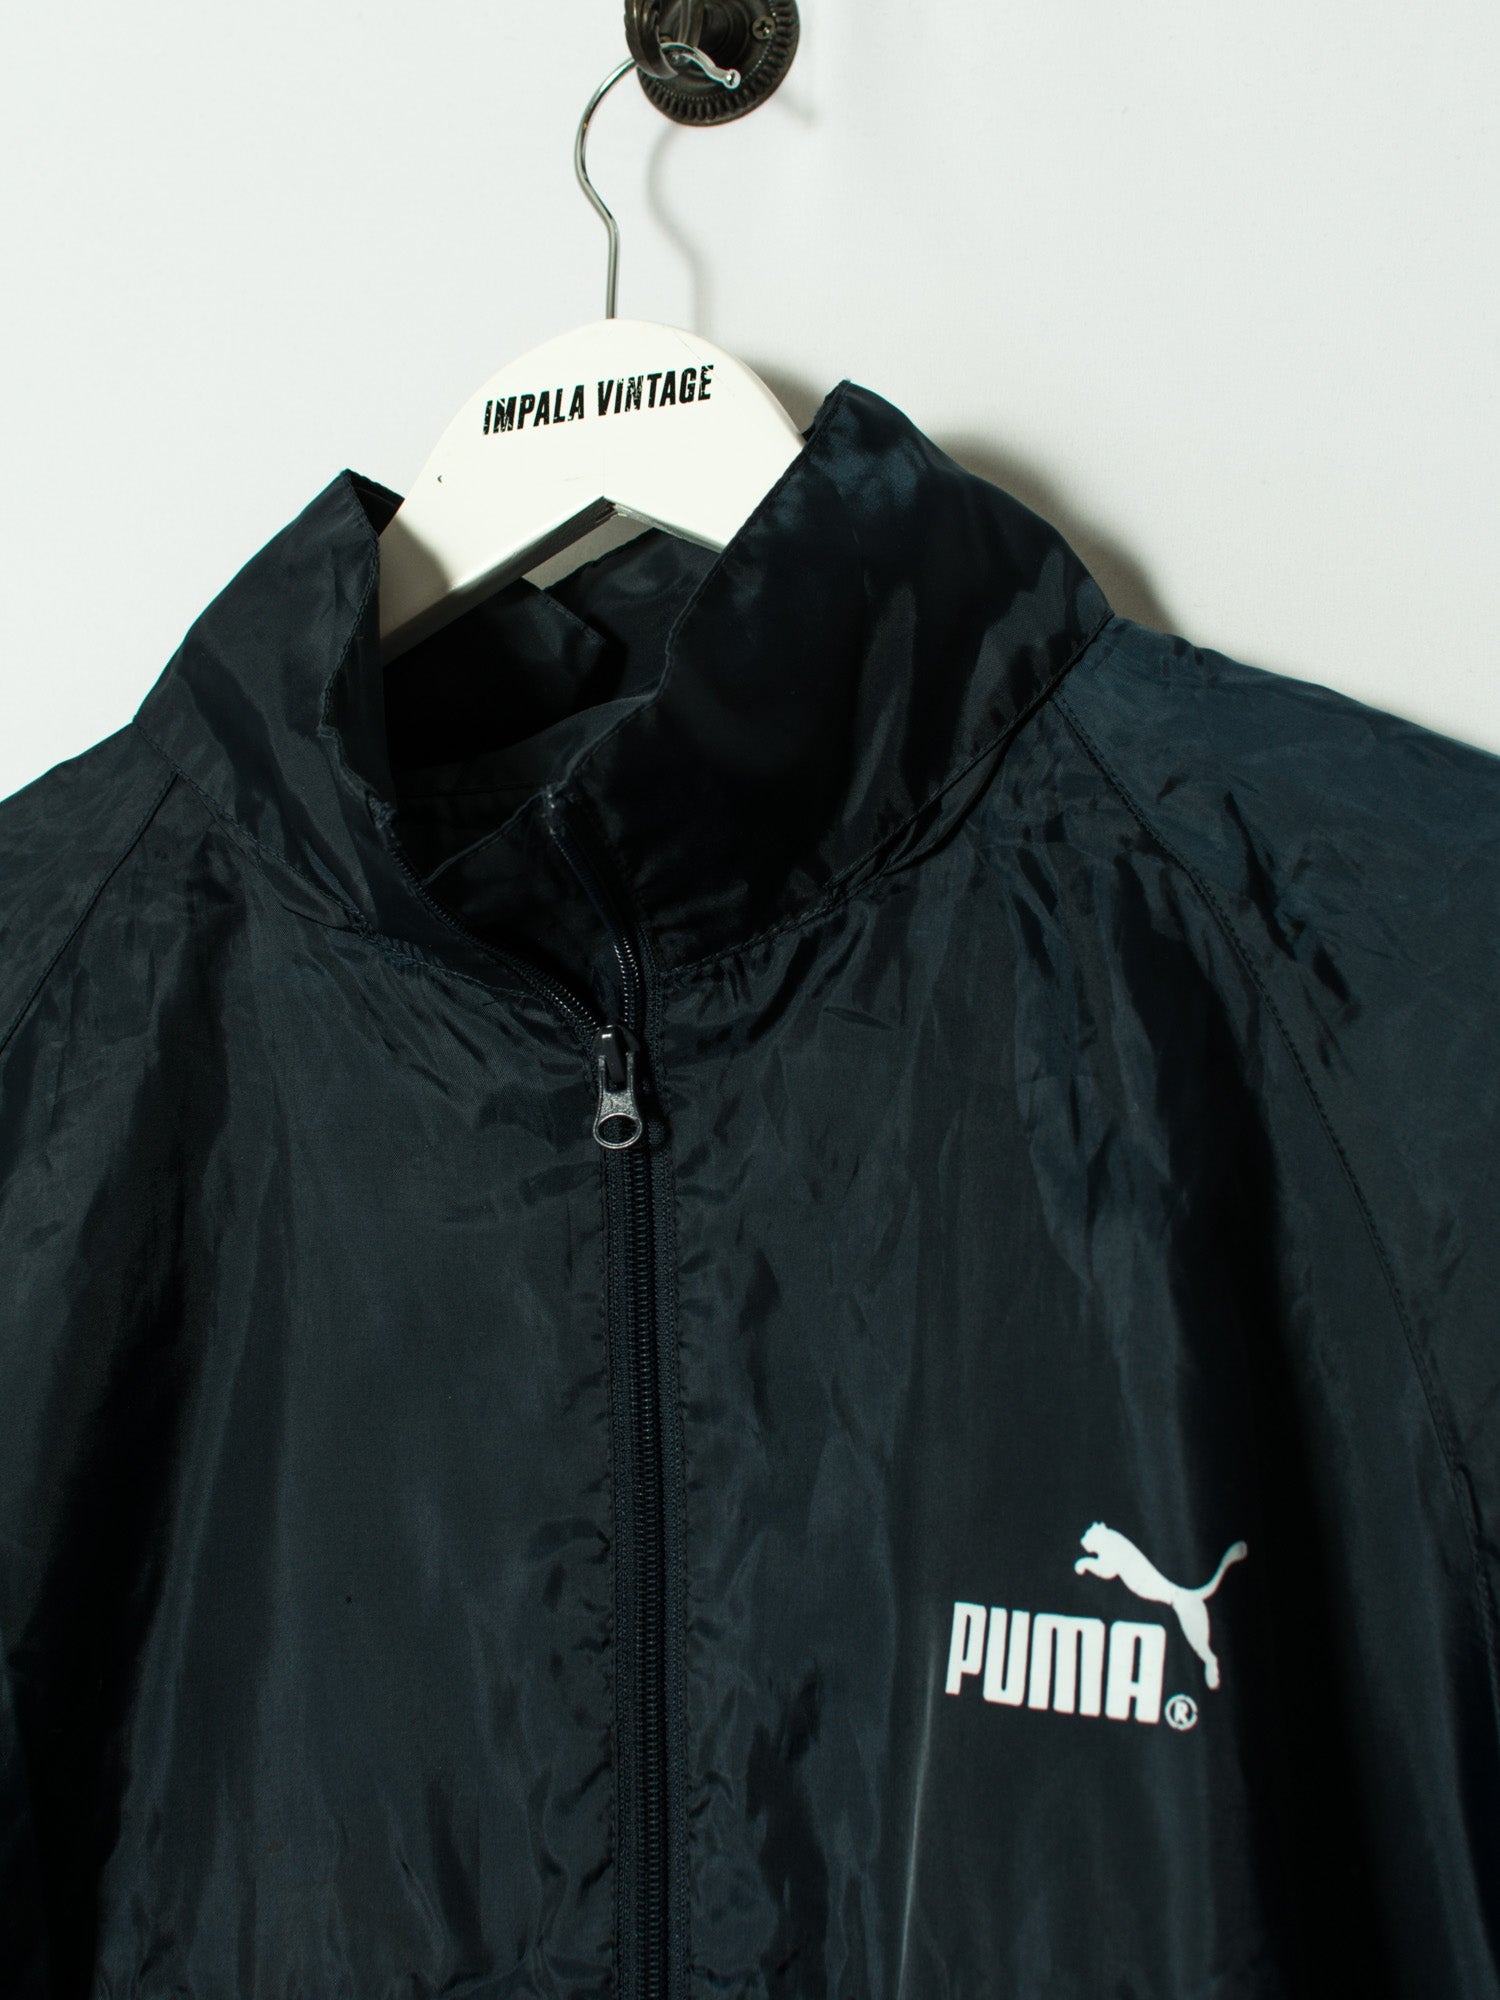 Puma Light Jacket | – Impala Vintage